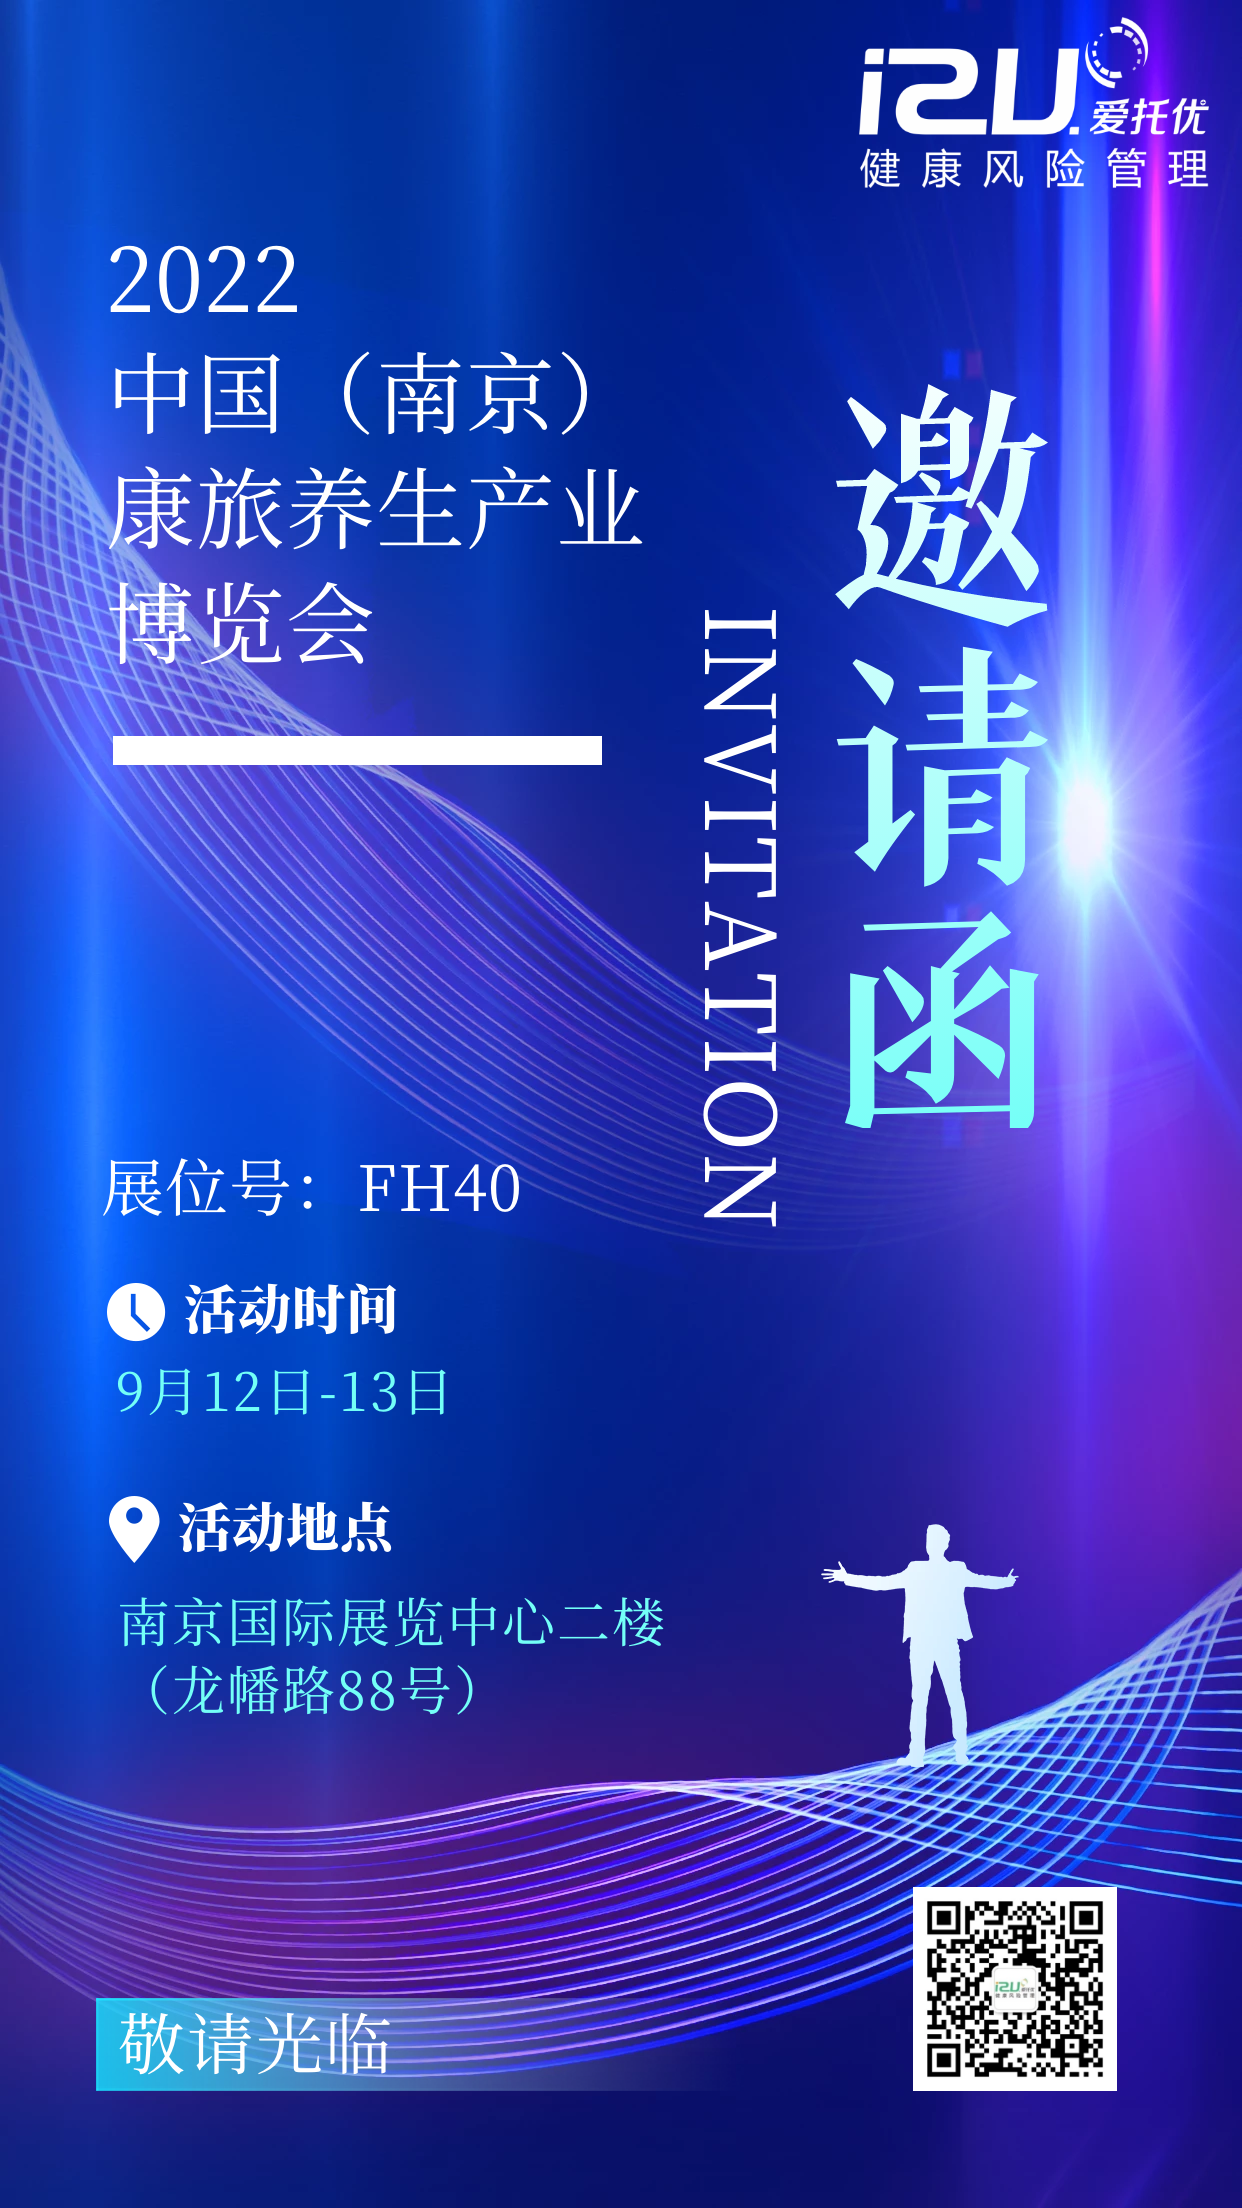 参加参加中国（南京）康旅养生产业博览会有哪些好处？